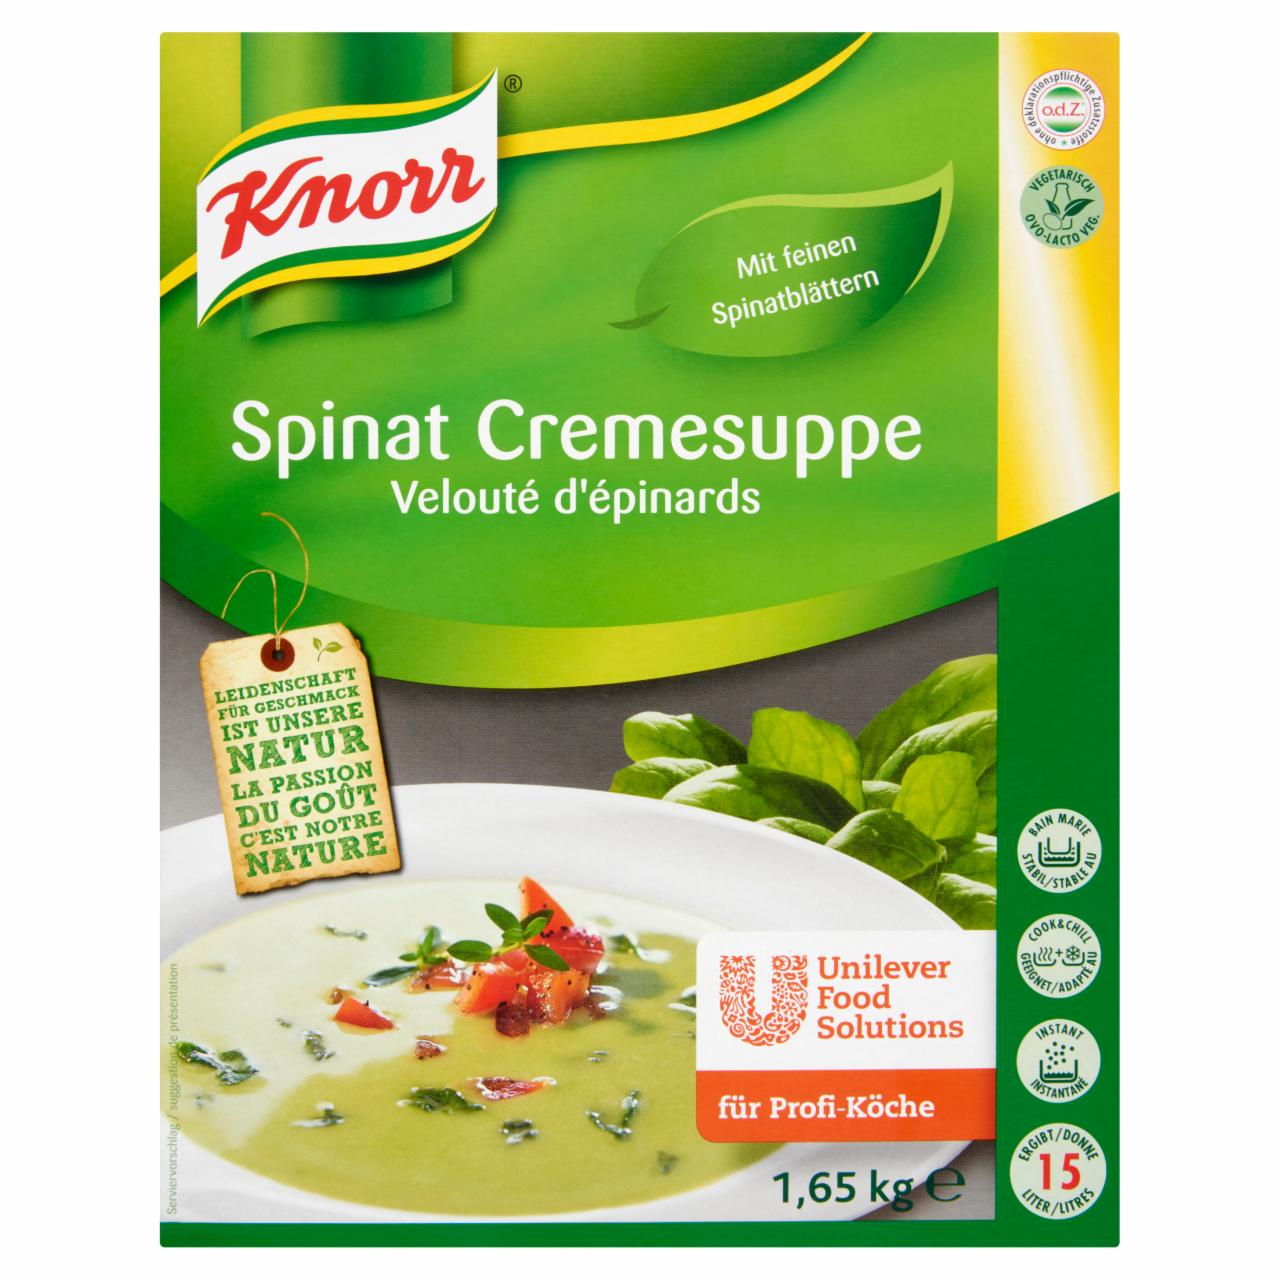 Képek - Knorr parajkrémleves 1,65 kg